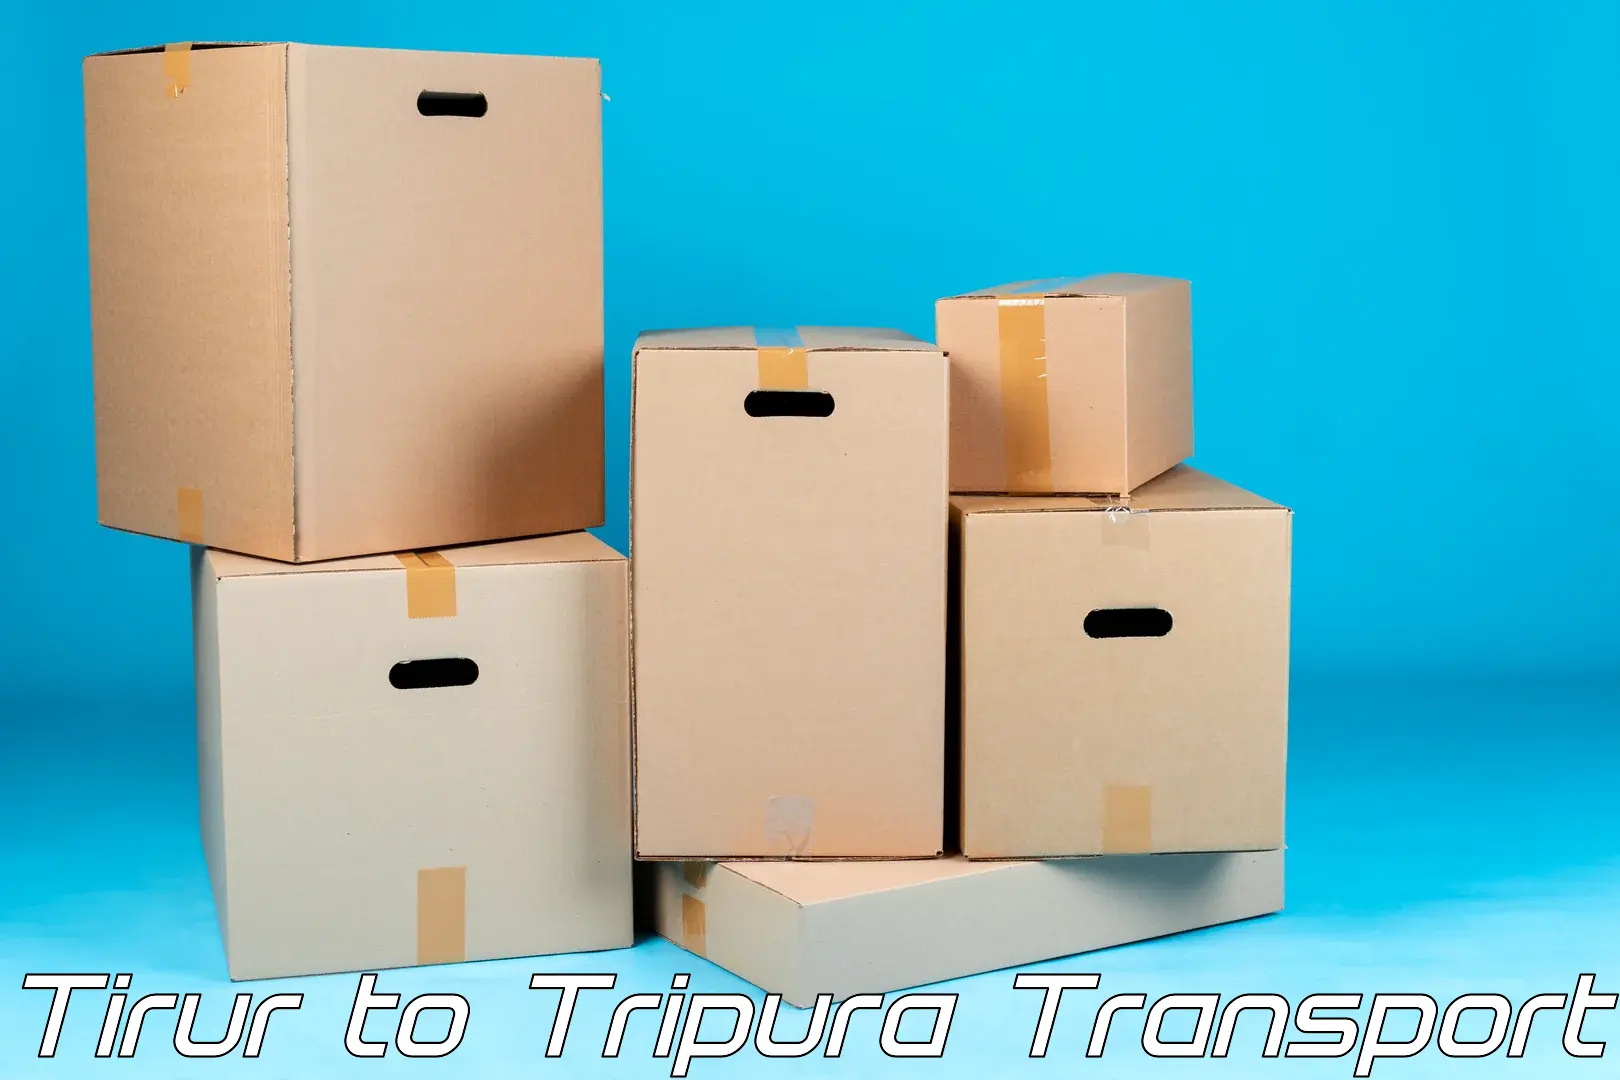 Road transport online services Tirur to Tripura